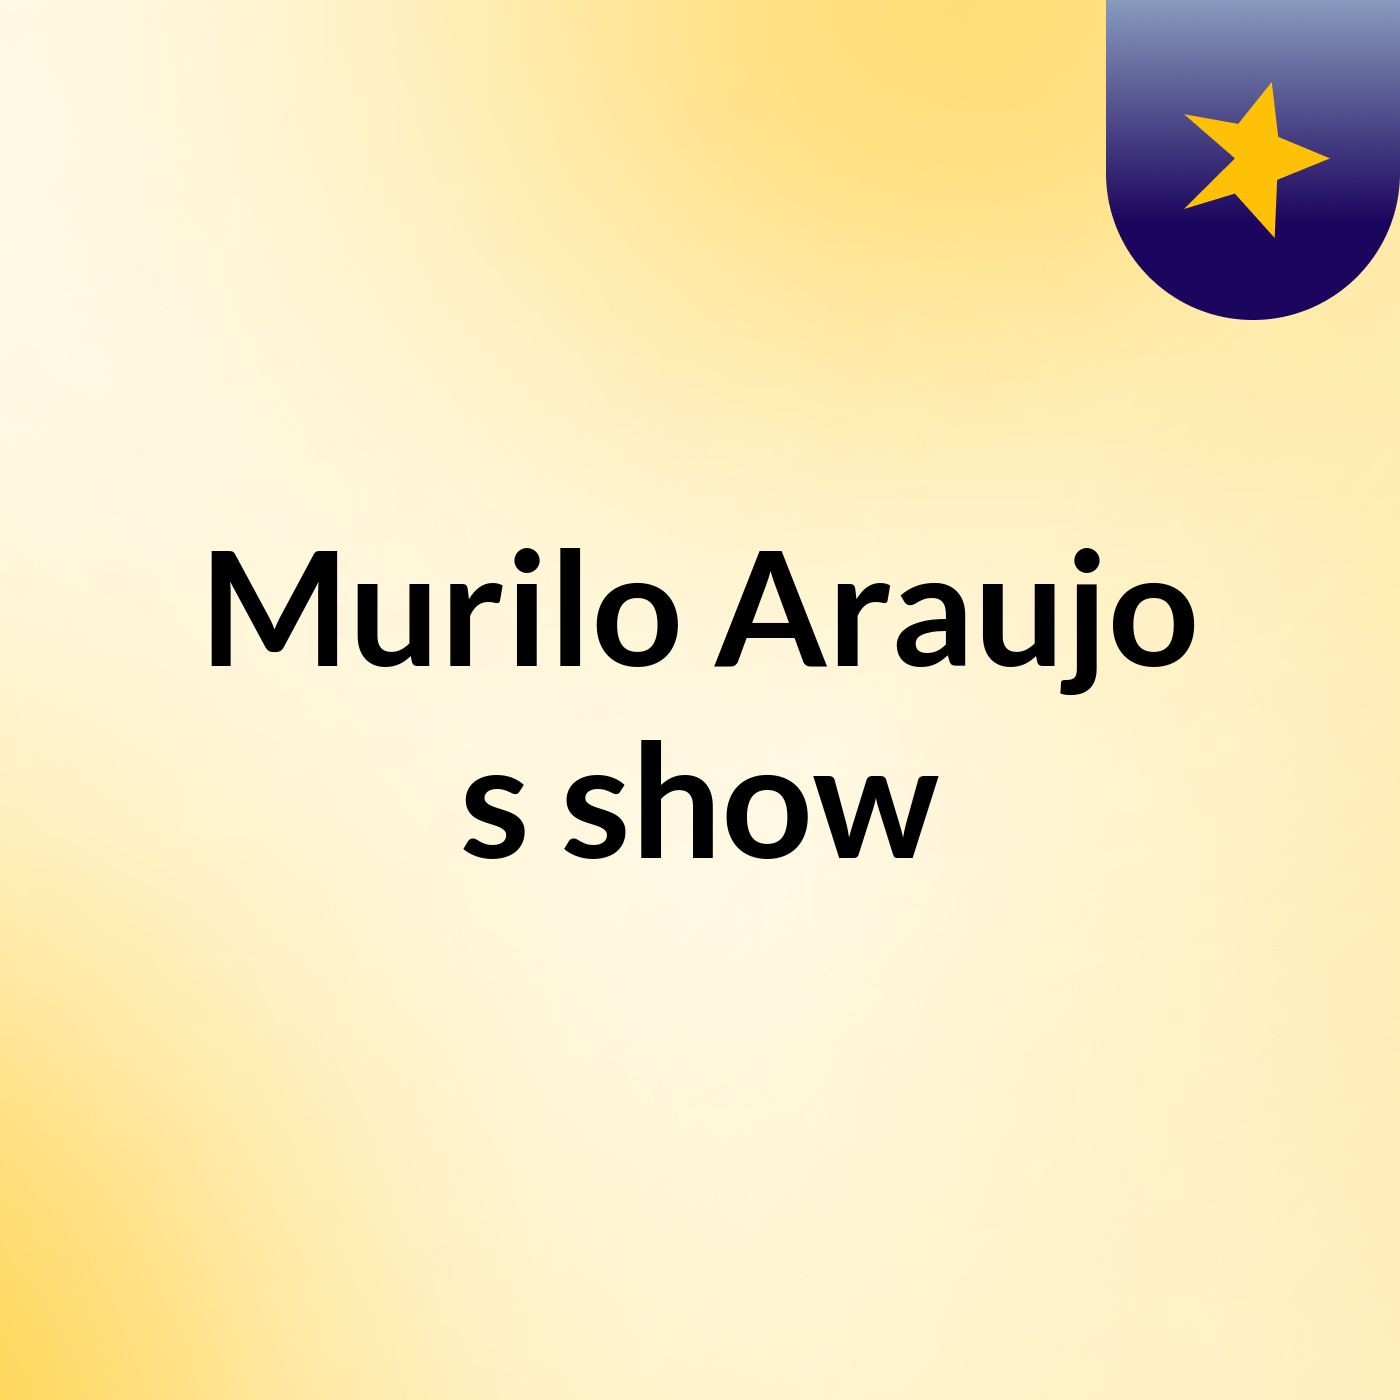 Murilo Araujo's show